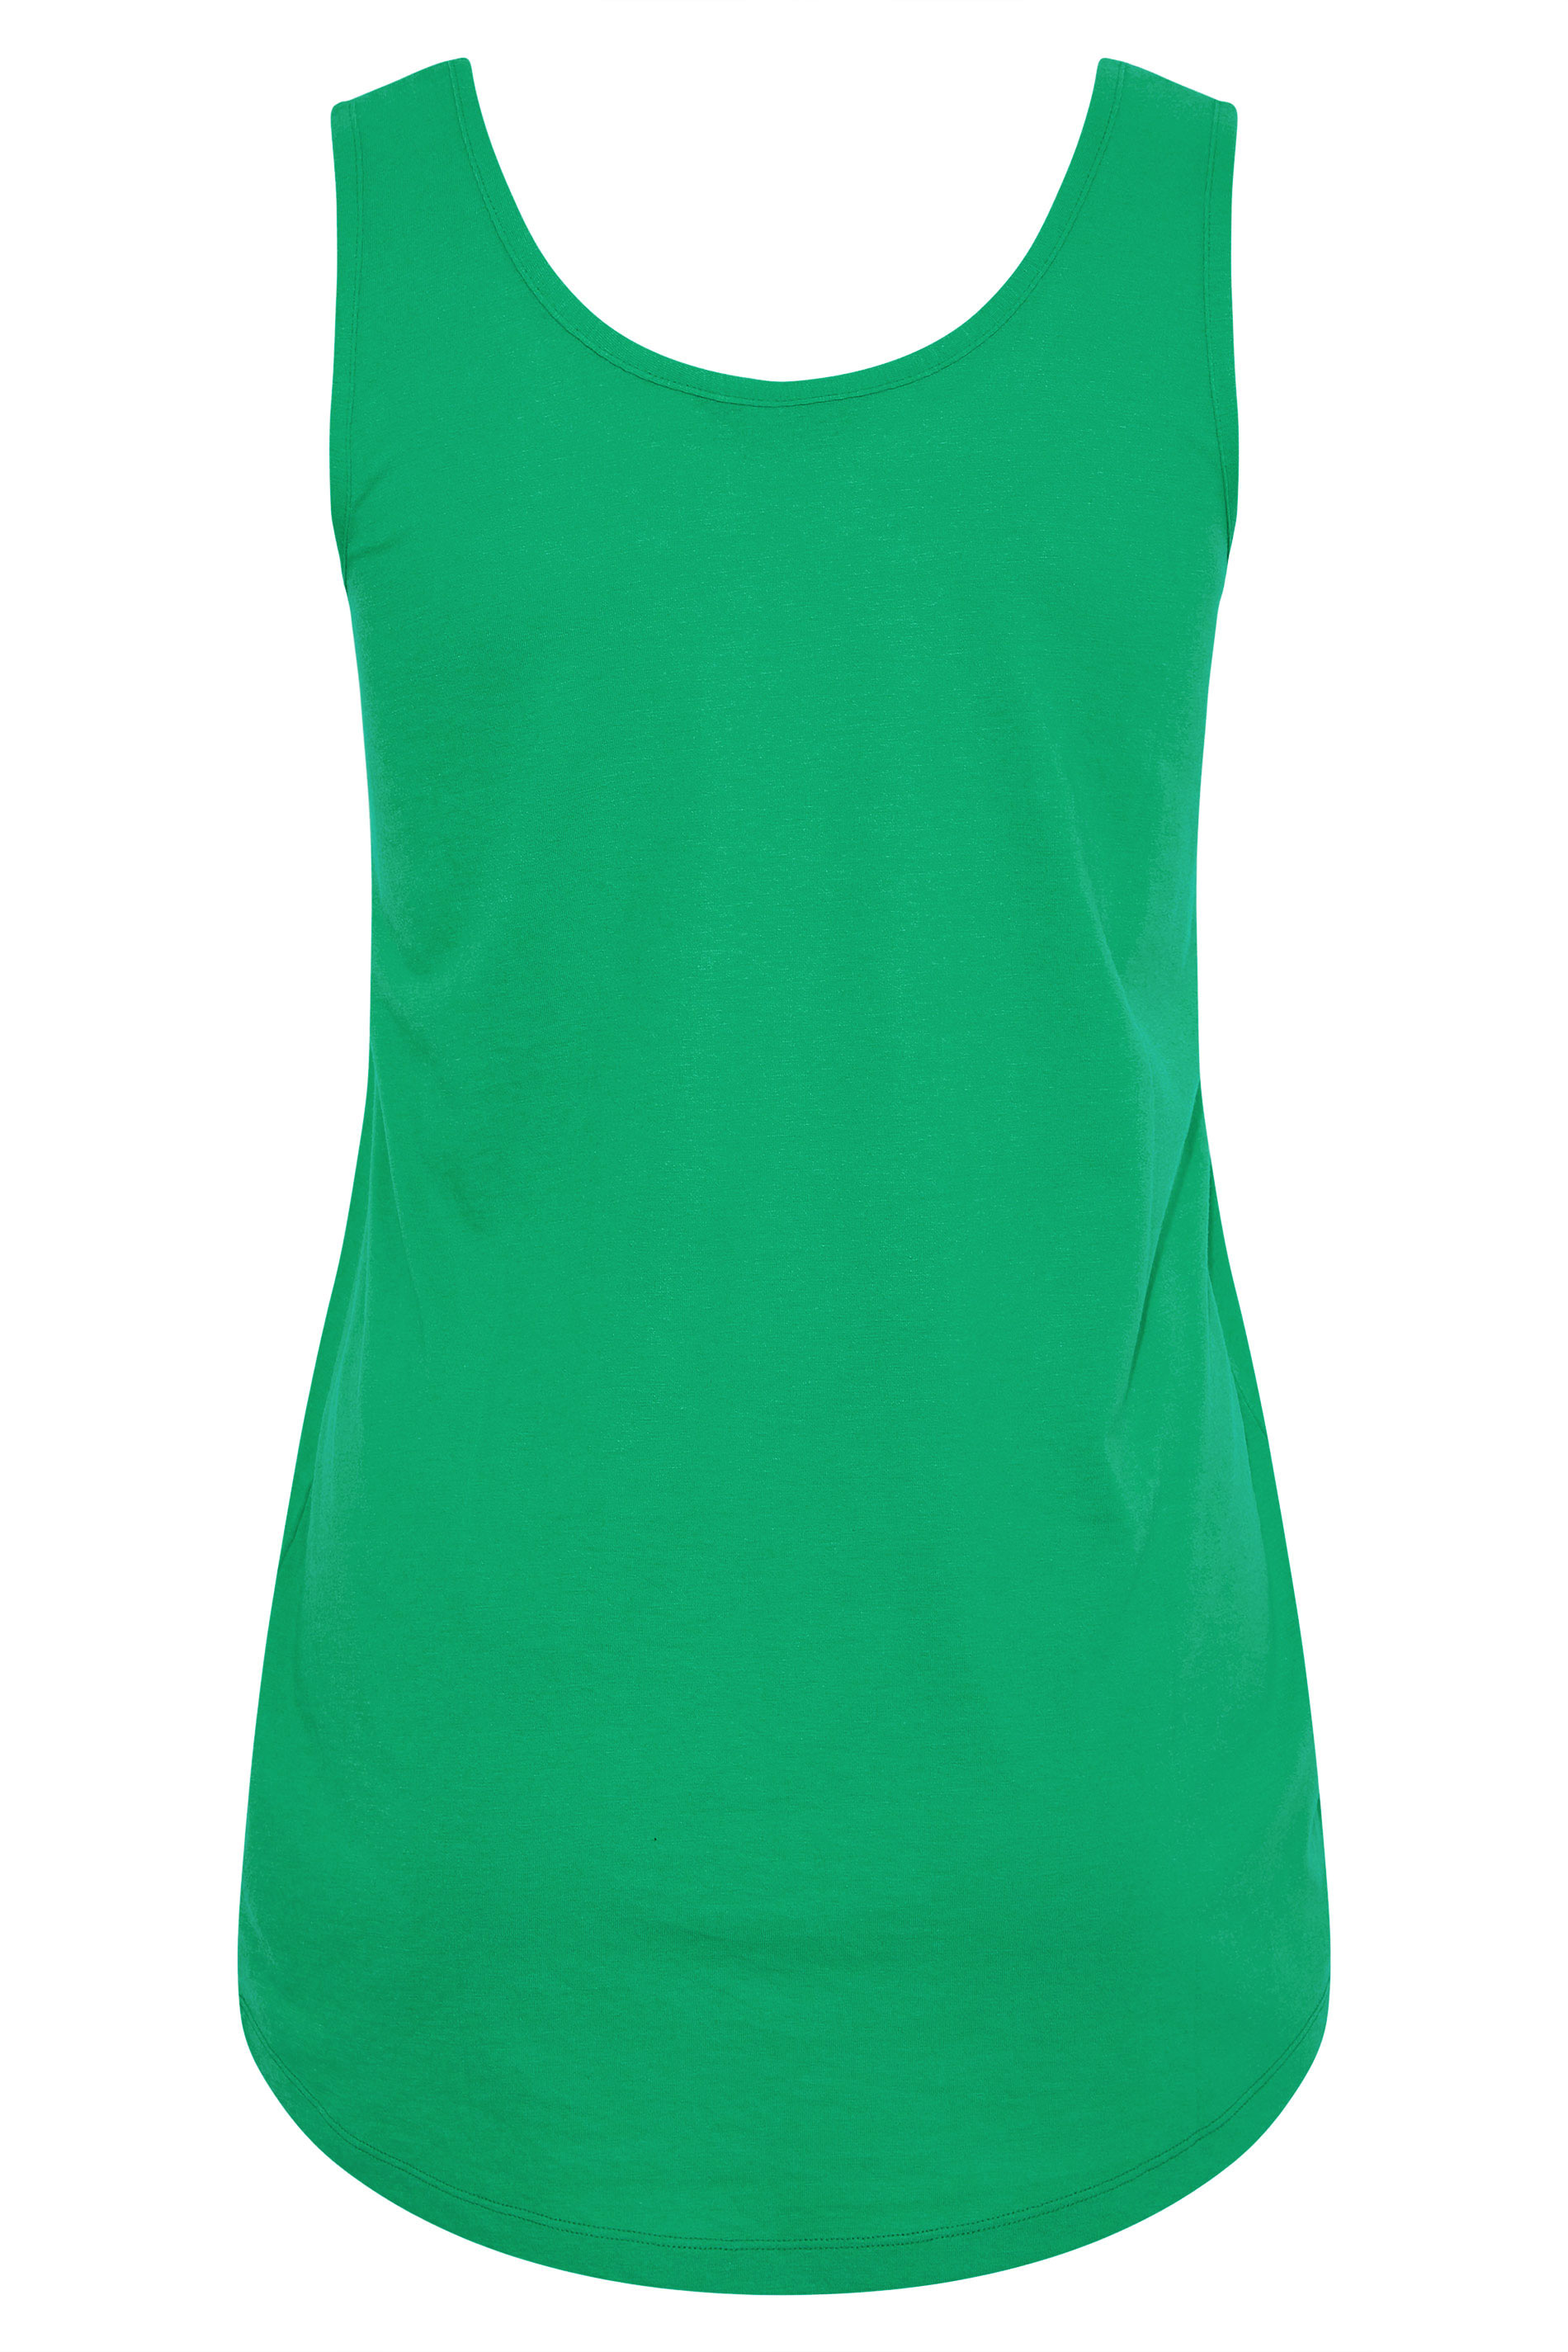 Grande taille  Tops Grande taille  T-Shirts Basiques & Débardeurs | Débardeur Vert en Jersey - NZ84530